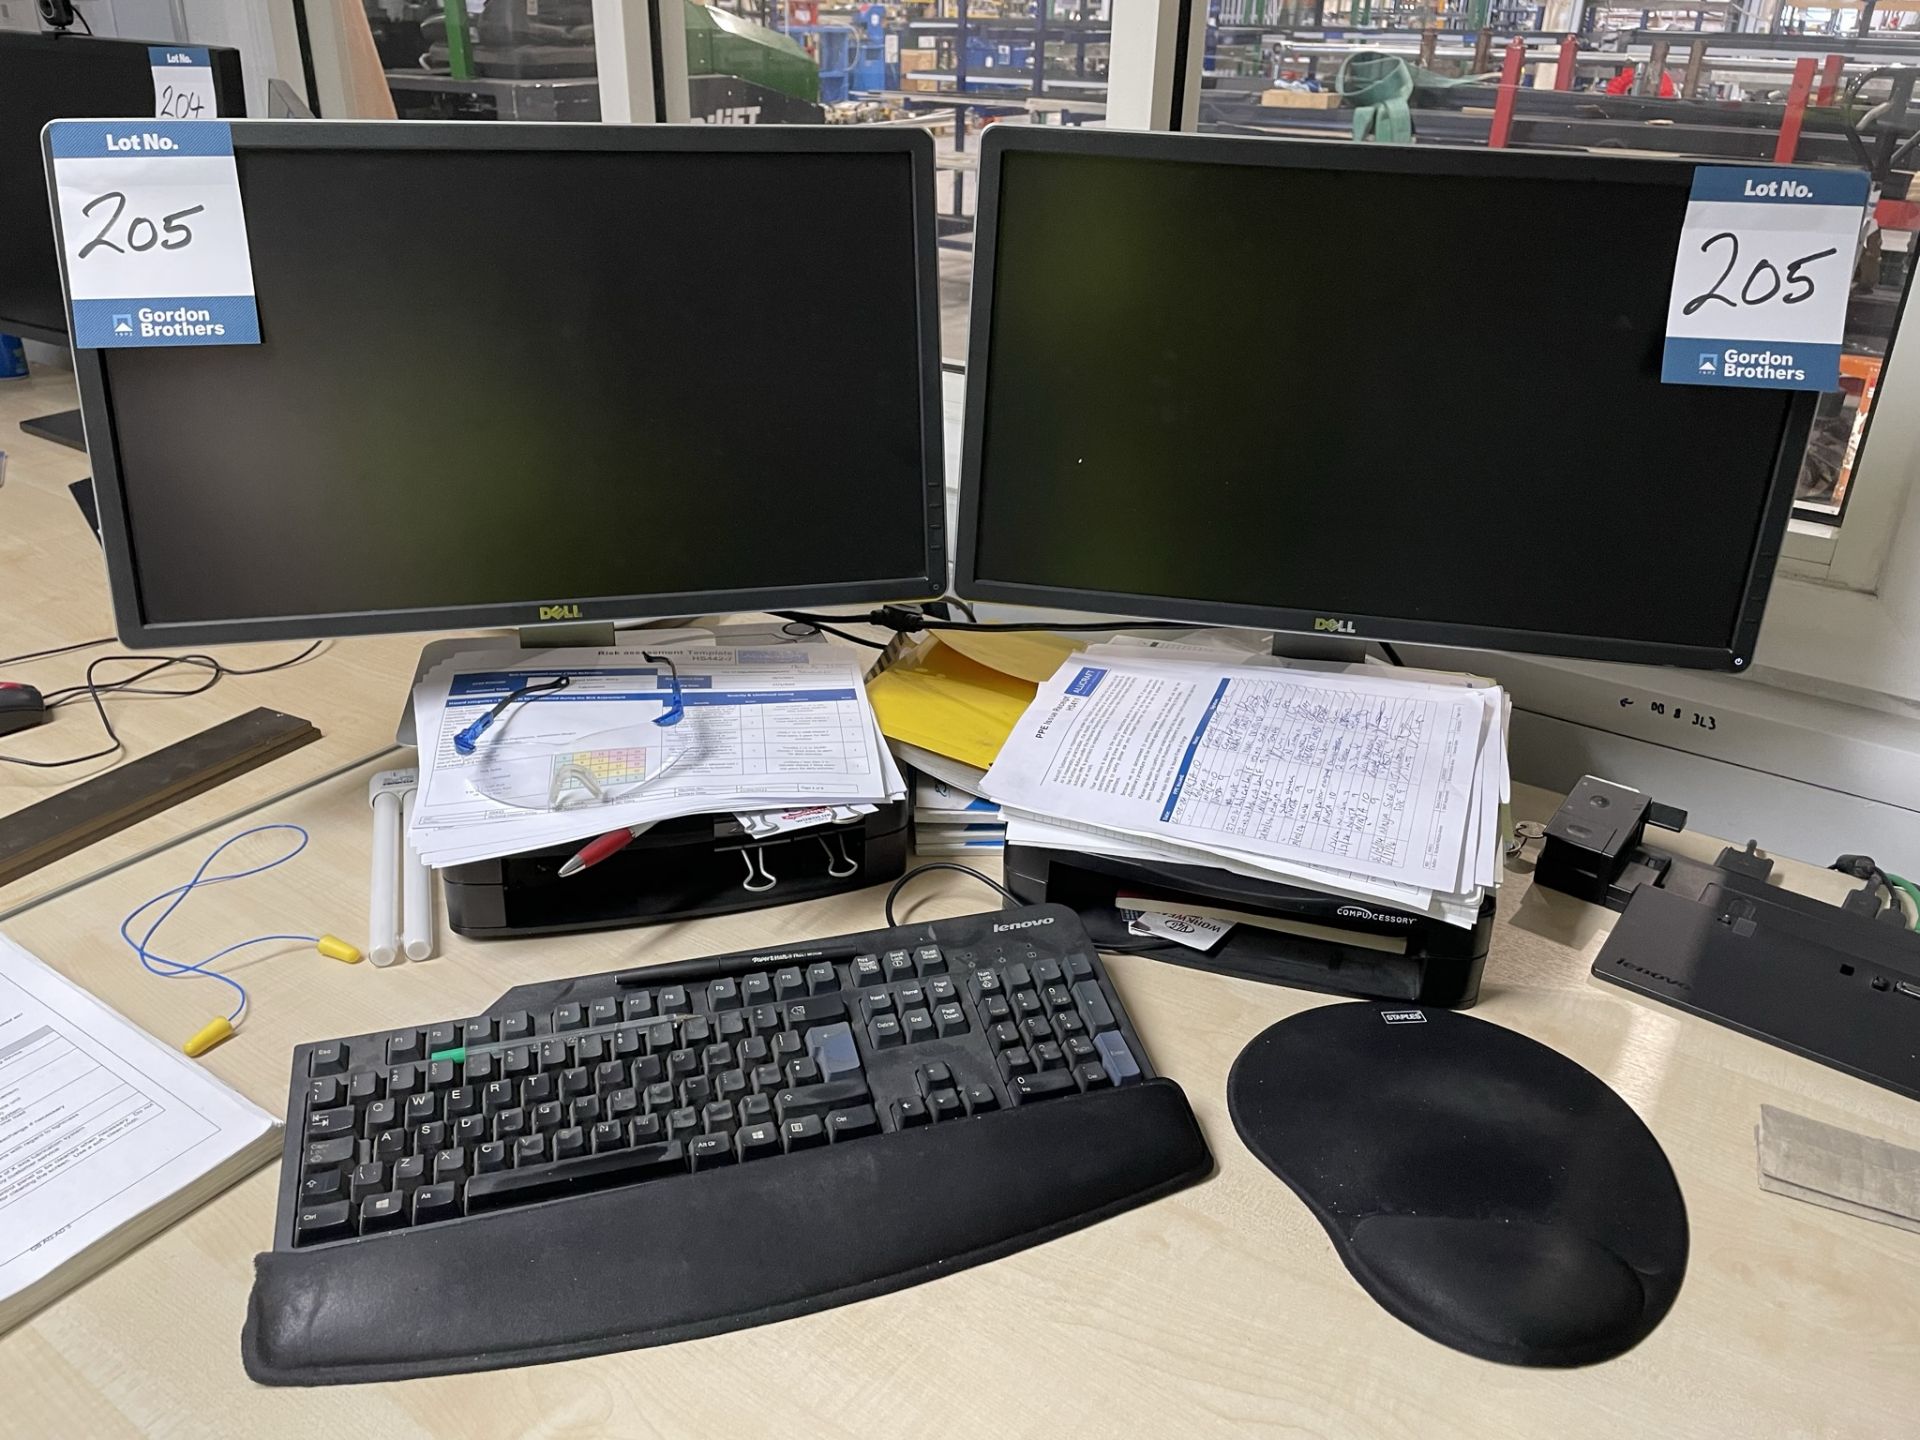 2x (no.) Dell monitors, ThinkPad docking station and keyboard